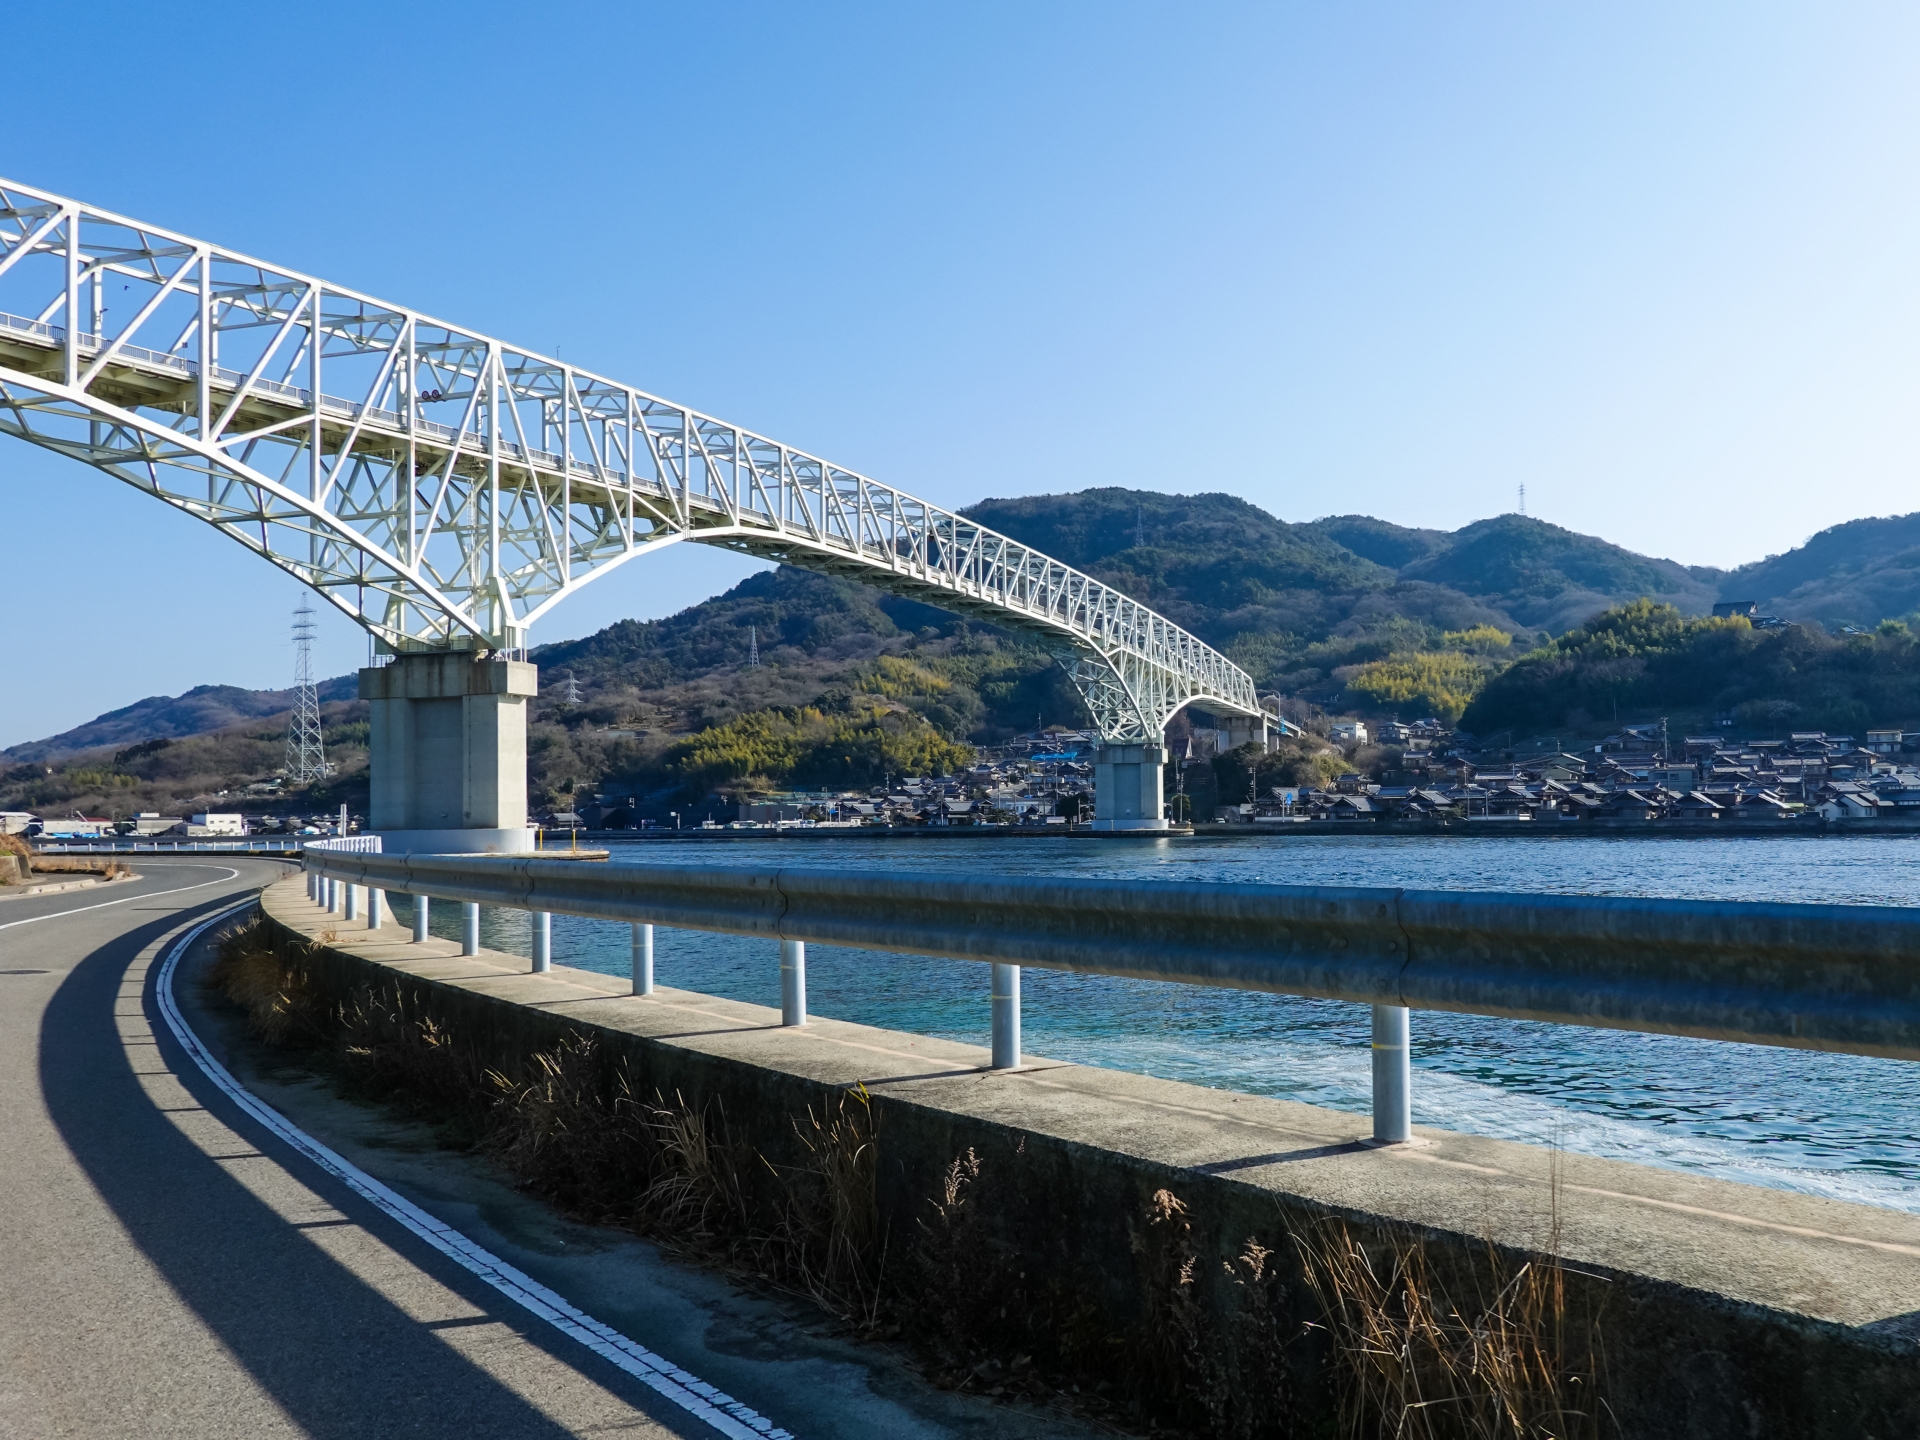 2004年に安芸郡江田島町や佐伯郡能美町などが合併して誕生した江田島市。広島港から航路で約30分の距離にあり、観光スポットやアクティビティを楽しめる。画像は江田島と呉を結ぶ早瀬大橋。